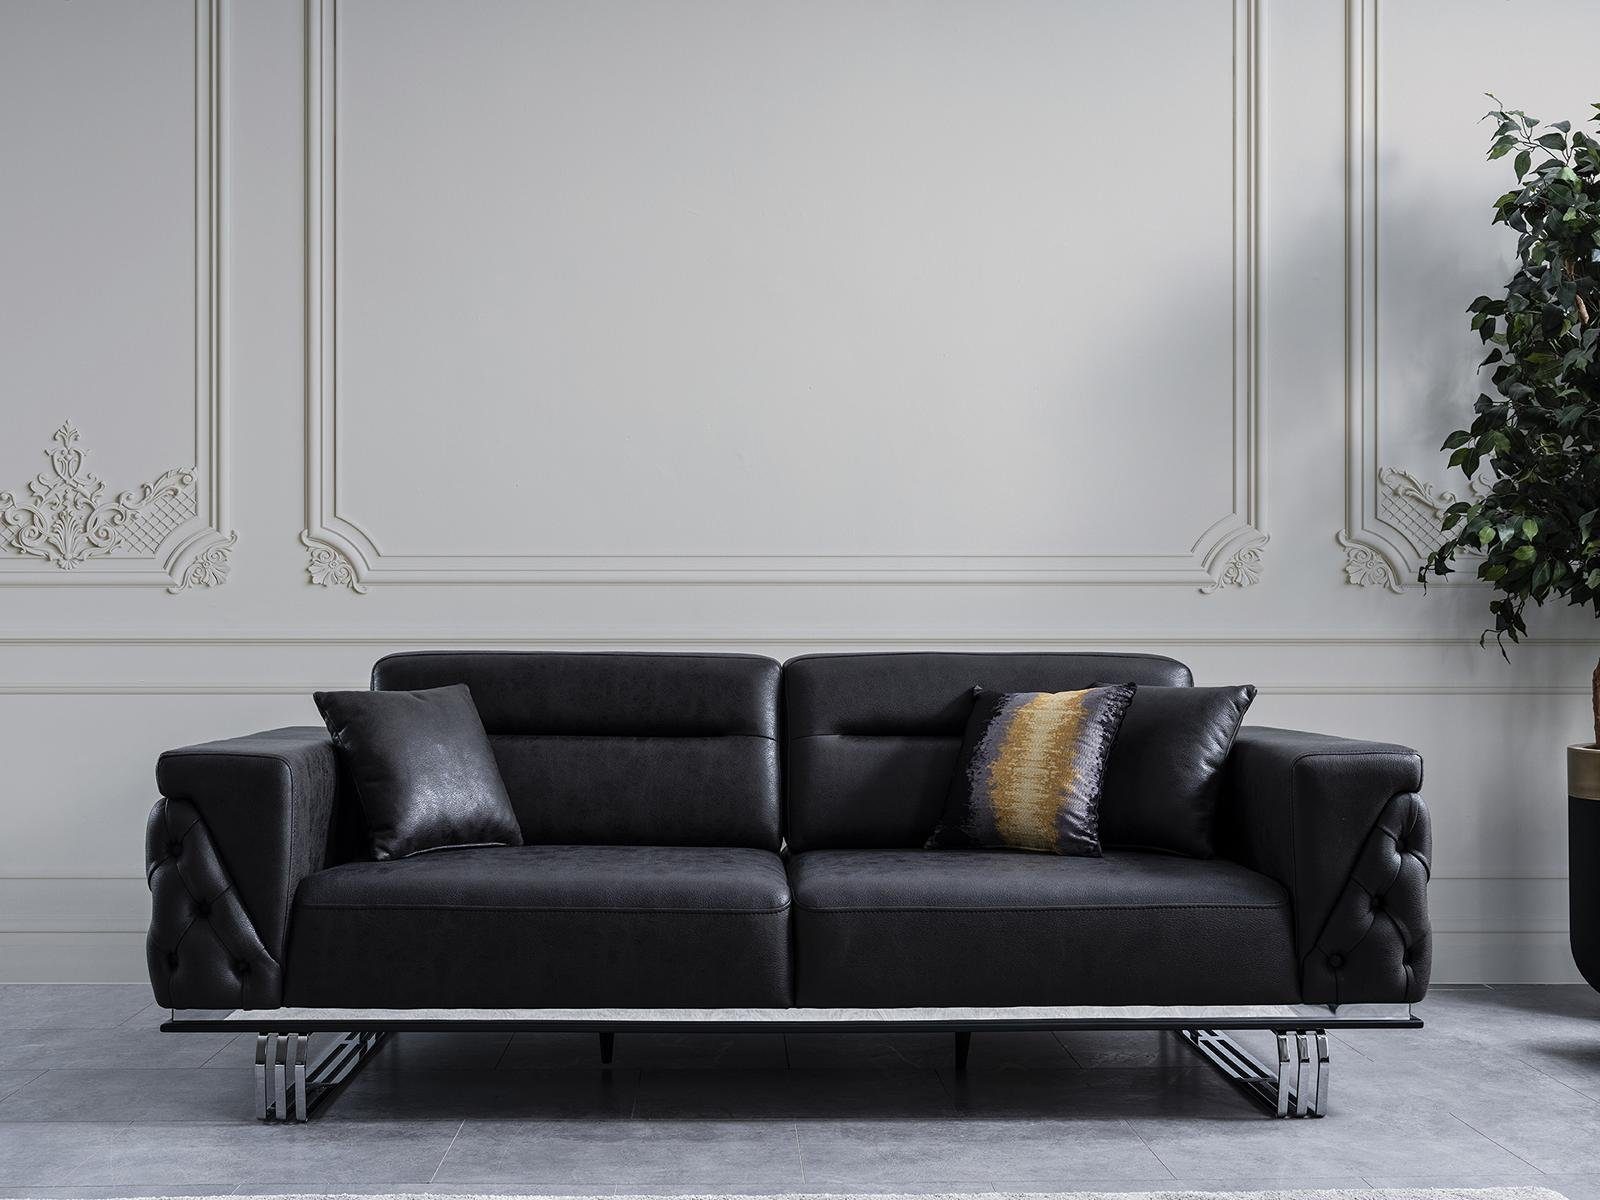 JVmoebel 4-Sitzer Wohnzimmer Sofa 4 Sitzer Luxus Designer Couch Polstersofas Modern | Einzelsofas